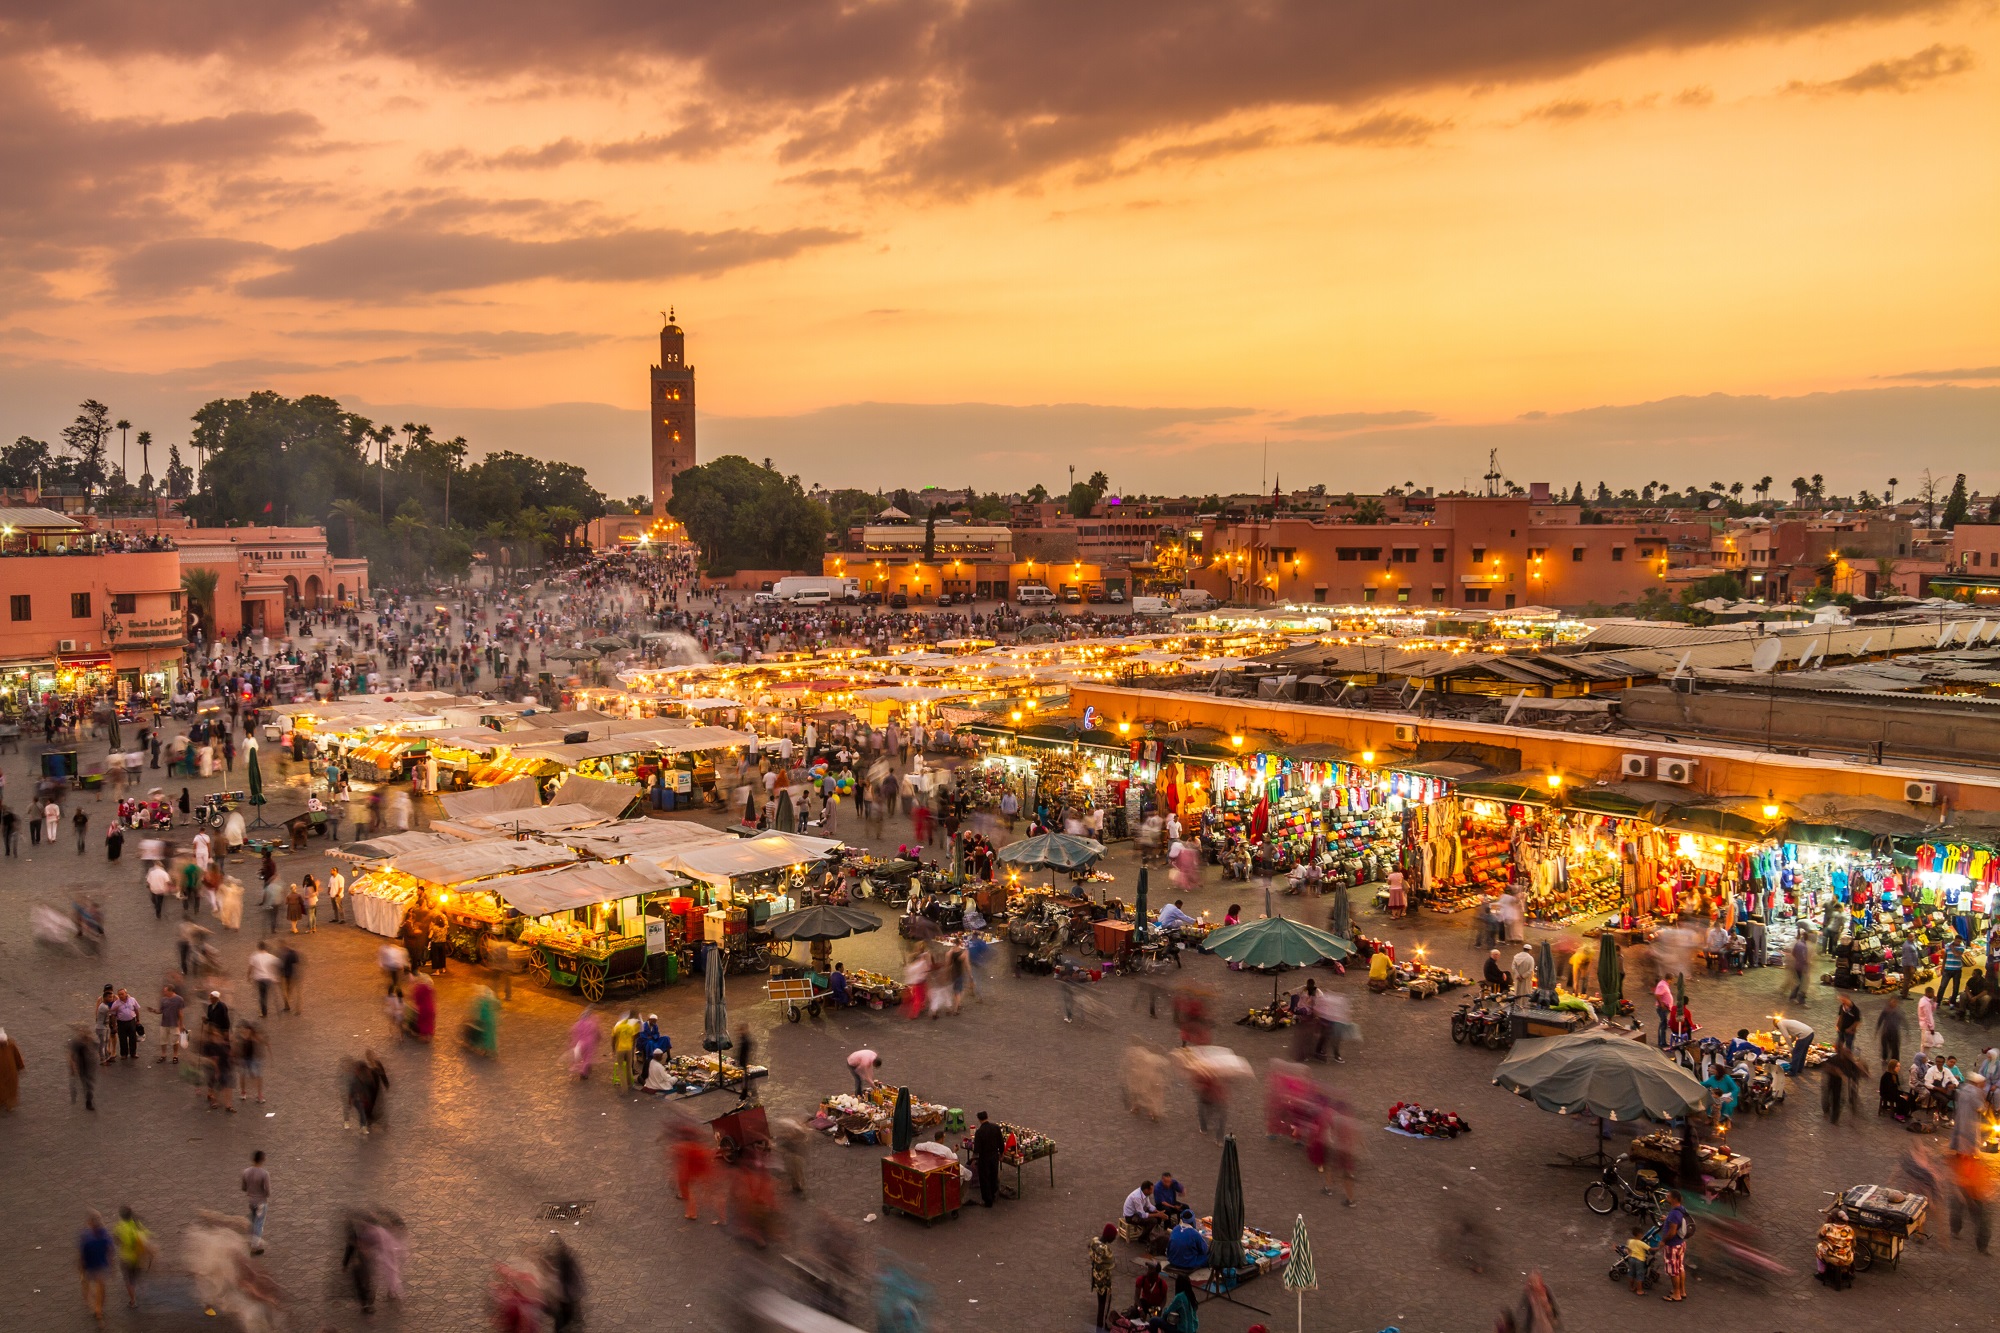 Egoïsme Denemarken op tijd 12x de leukste tips en bezienswaardigheden voor Marrakech